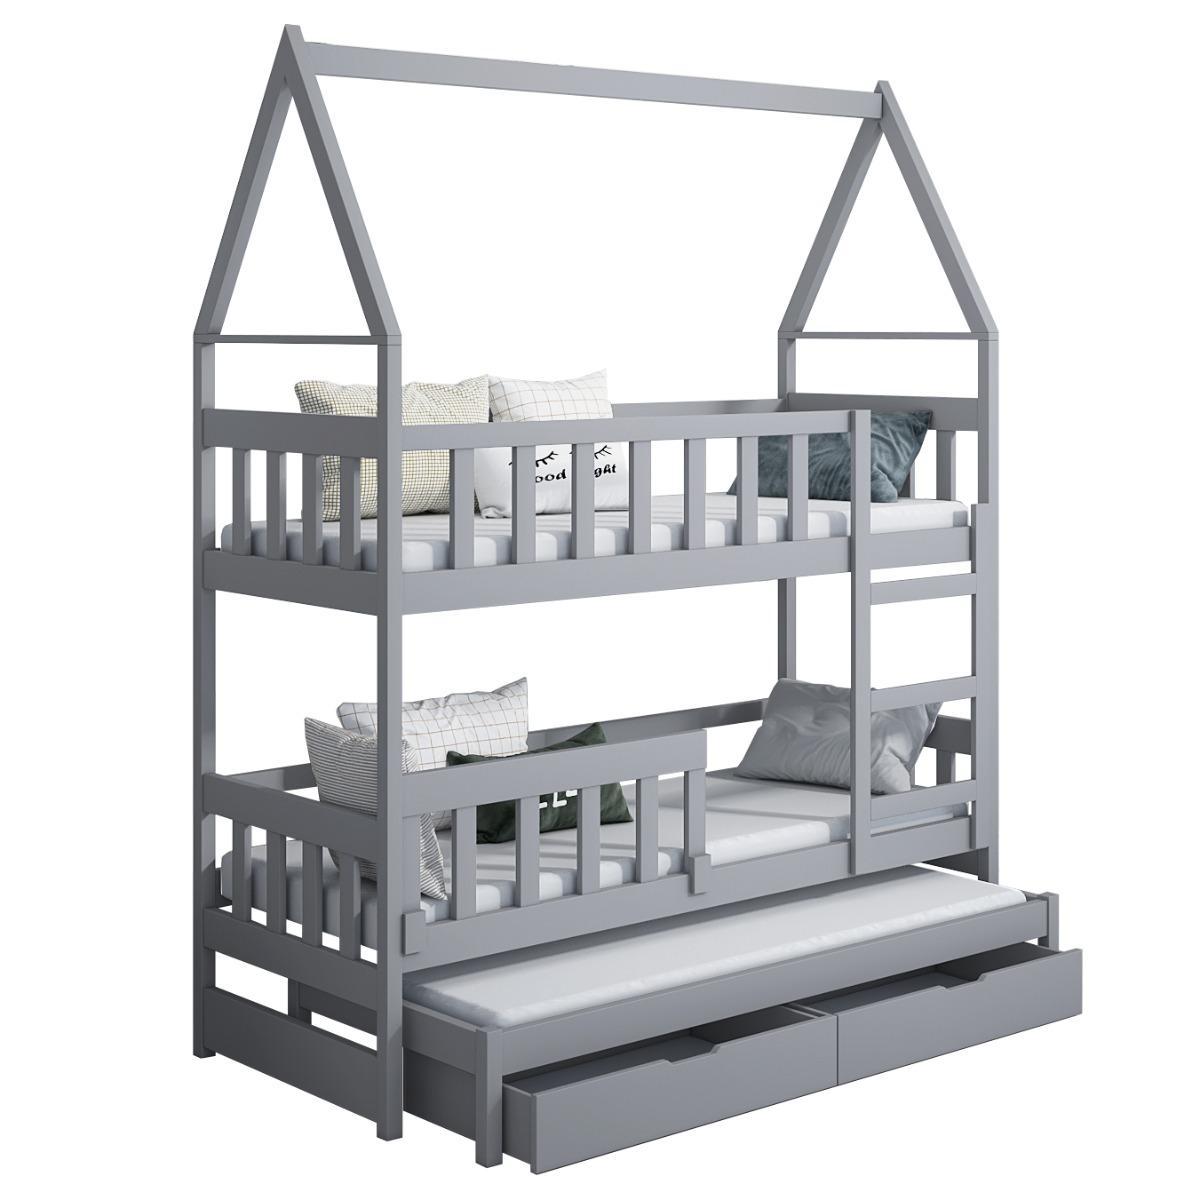 Łóżko piętrowe DOMEK drewno szare miejsce do spania dla 3 osób + materace lateksowe 180x75 cm + barierka dolna do pokoju dziecka 3 Full Screen